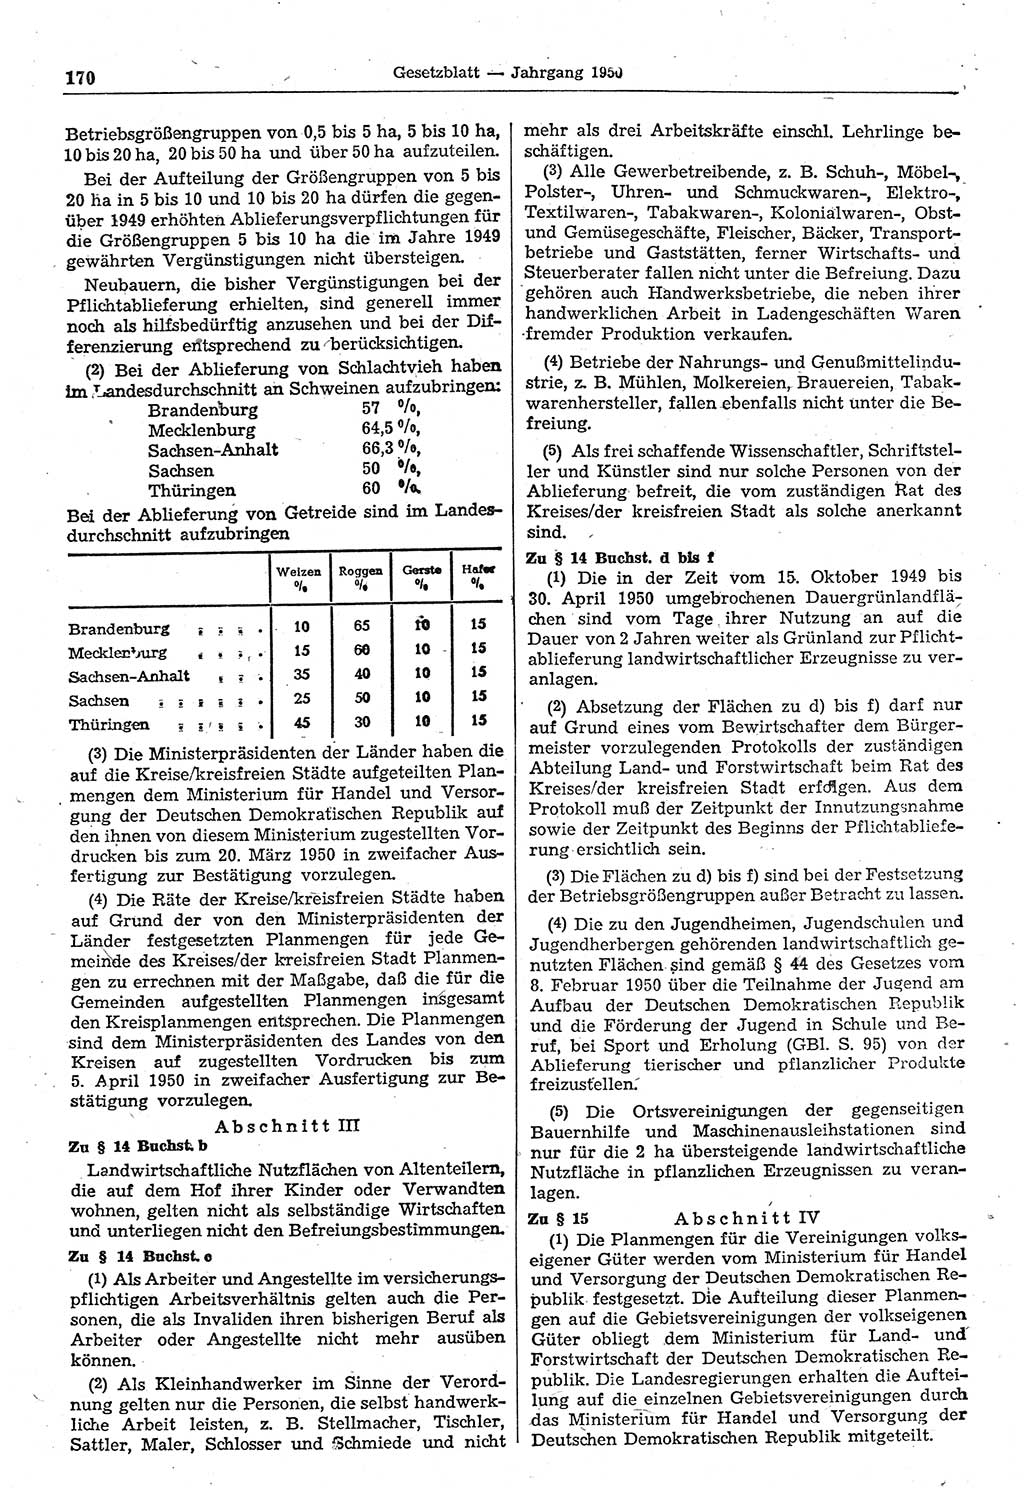 Gesetzblatt (GBl.) der Deutschen Demokratischen Republik (DDR) 1950, Seite 170 (GBl. DDR 1950, S. 170)